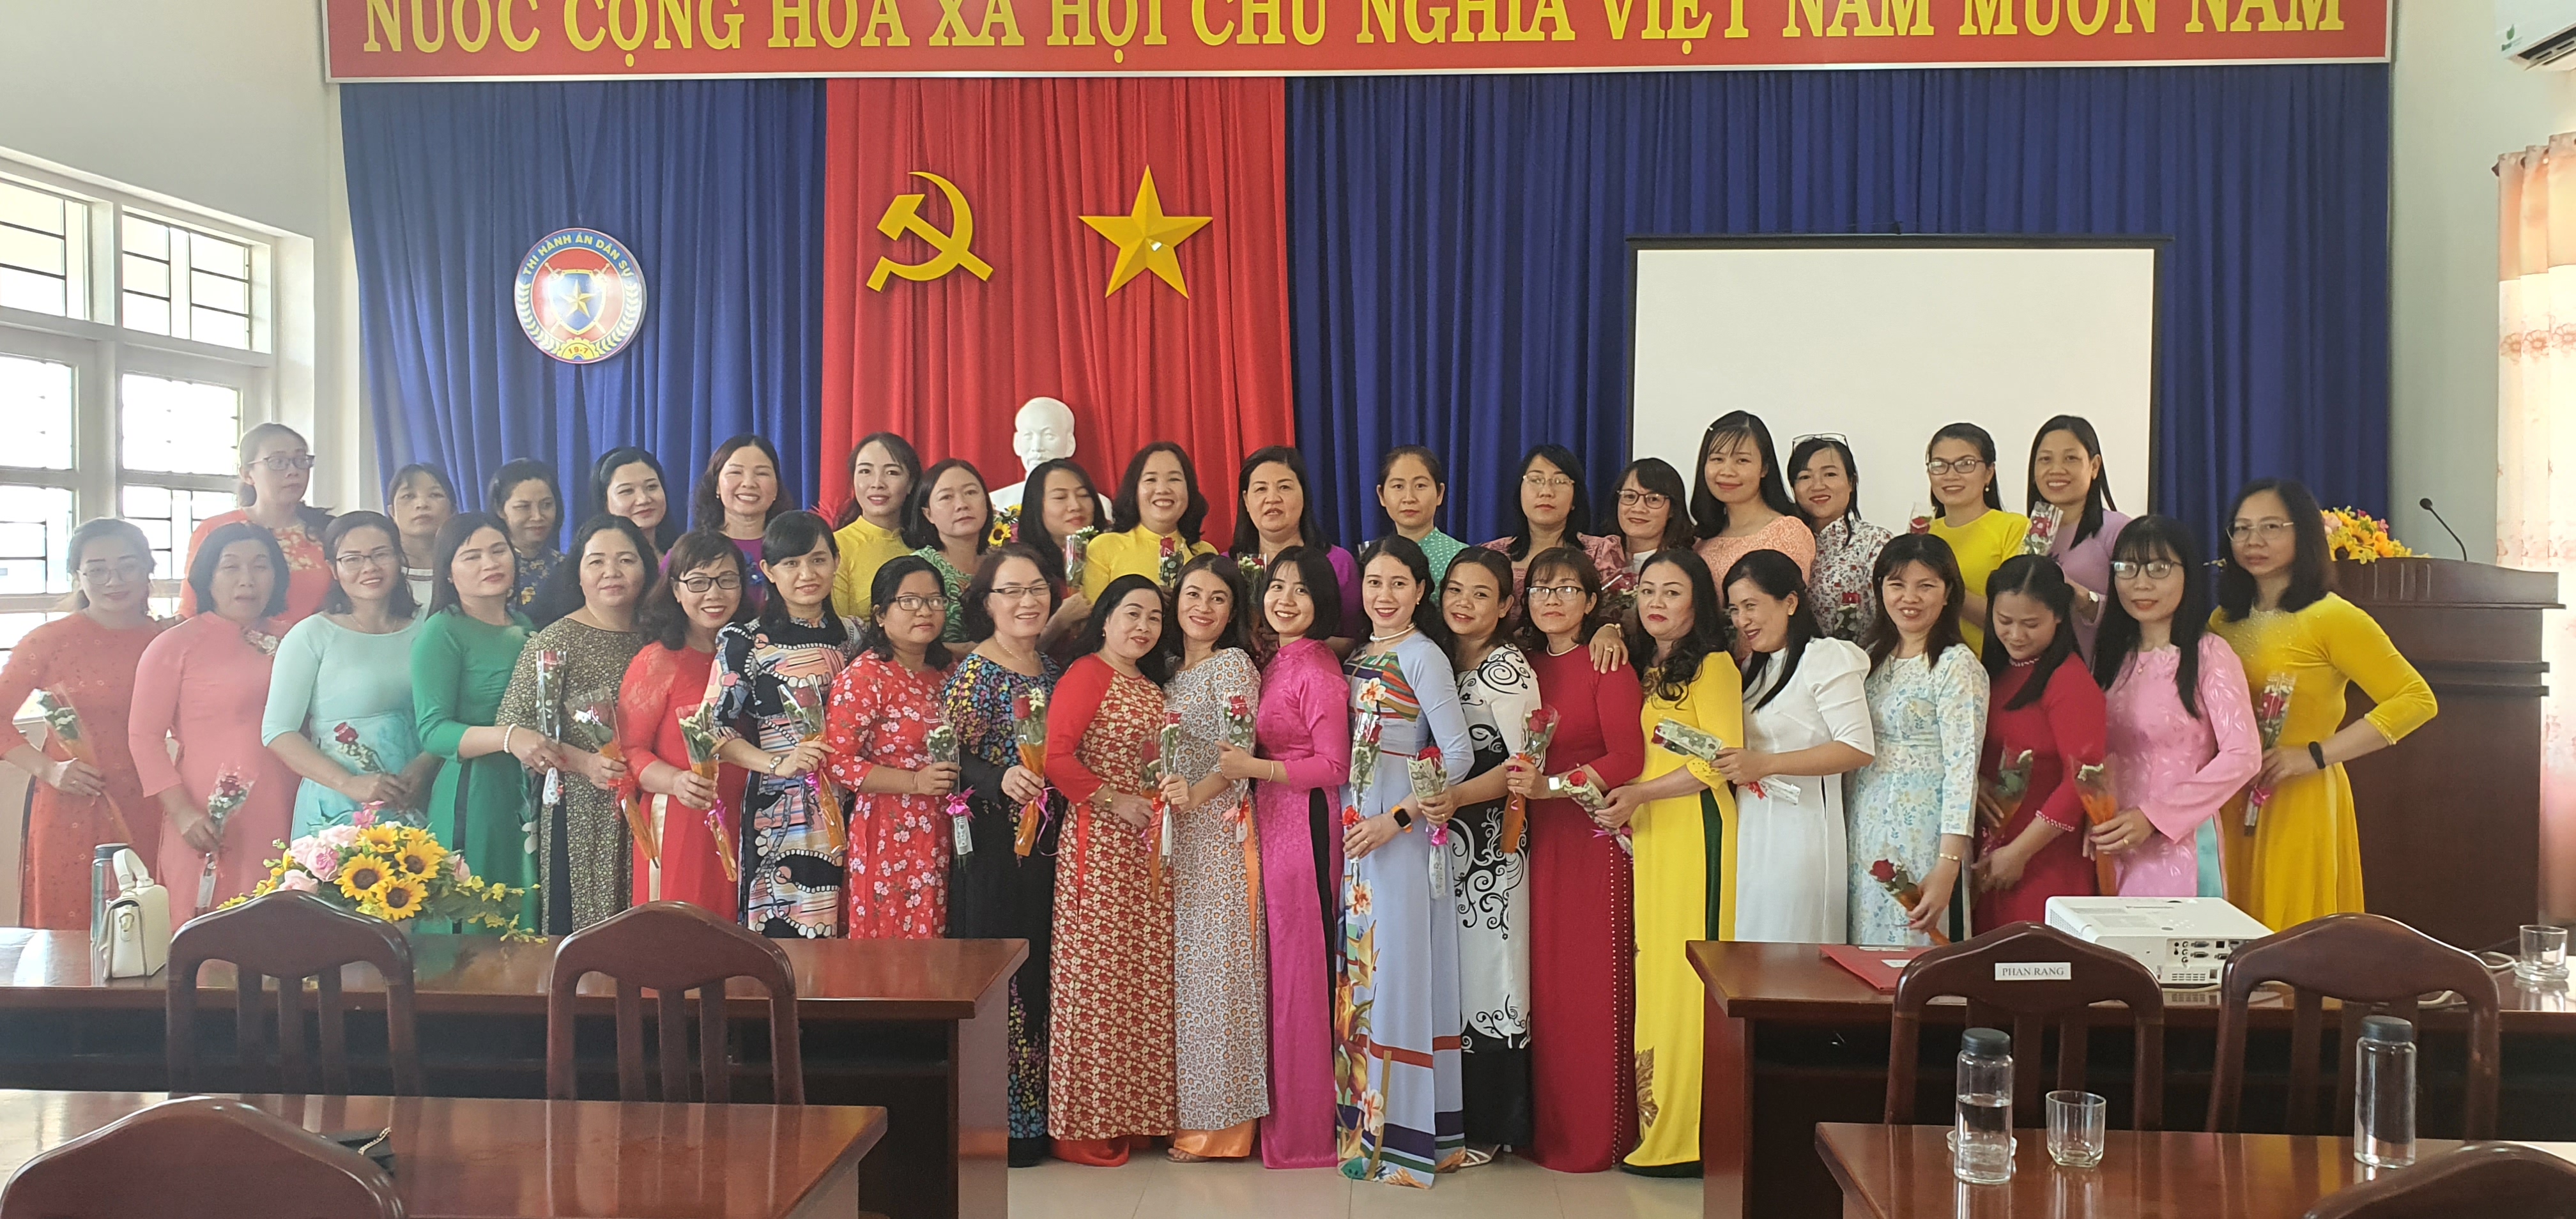 Ban Vì sự tiến bộ phụ nữ Cục Thi hành án dân sự tỉnh Ninh Thuận tổ chức họp mặt nữ cán bộ, công chức và người lao động toàn tỉnh nhân dịp kỷ niệm 113 năm Ngày Quốc tế Phụ nữ và 1983 năm khởi nghĩa Hai Bà Trưng